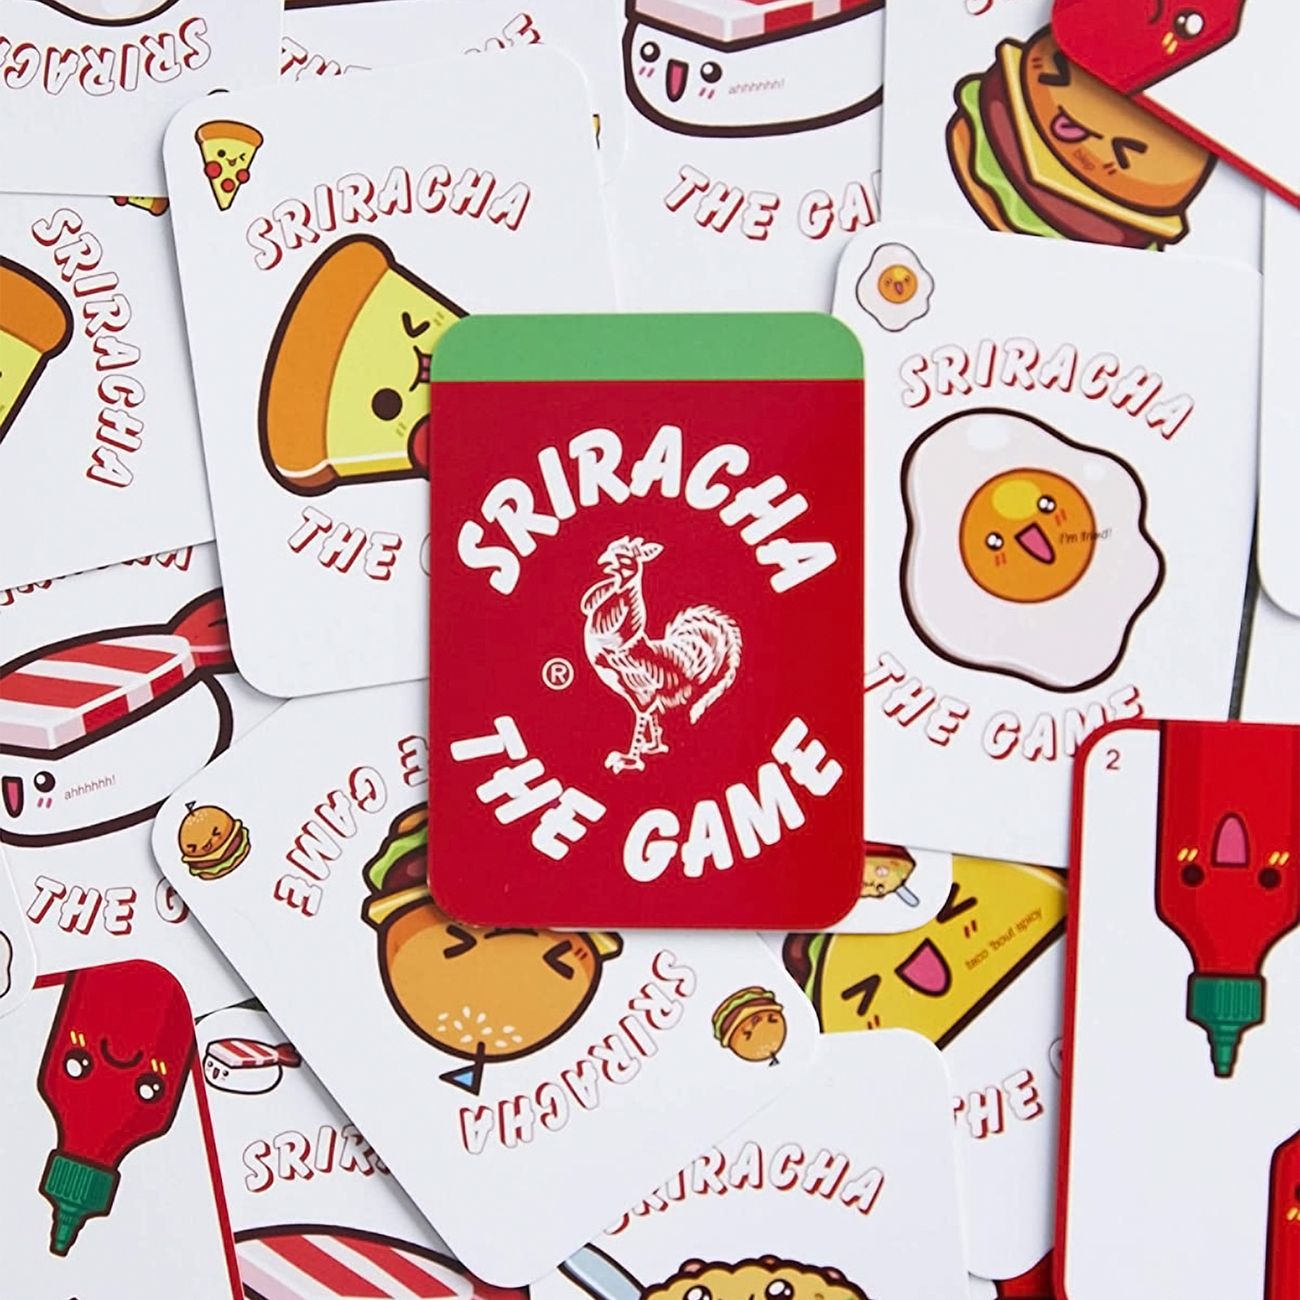 sriracha-the-game-98688-3